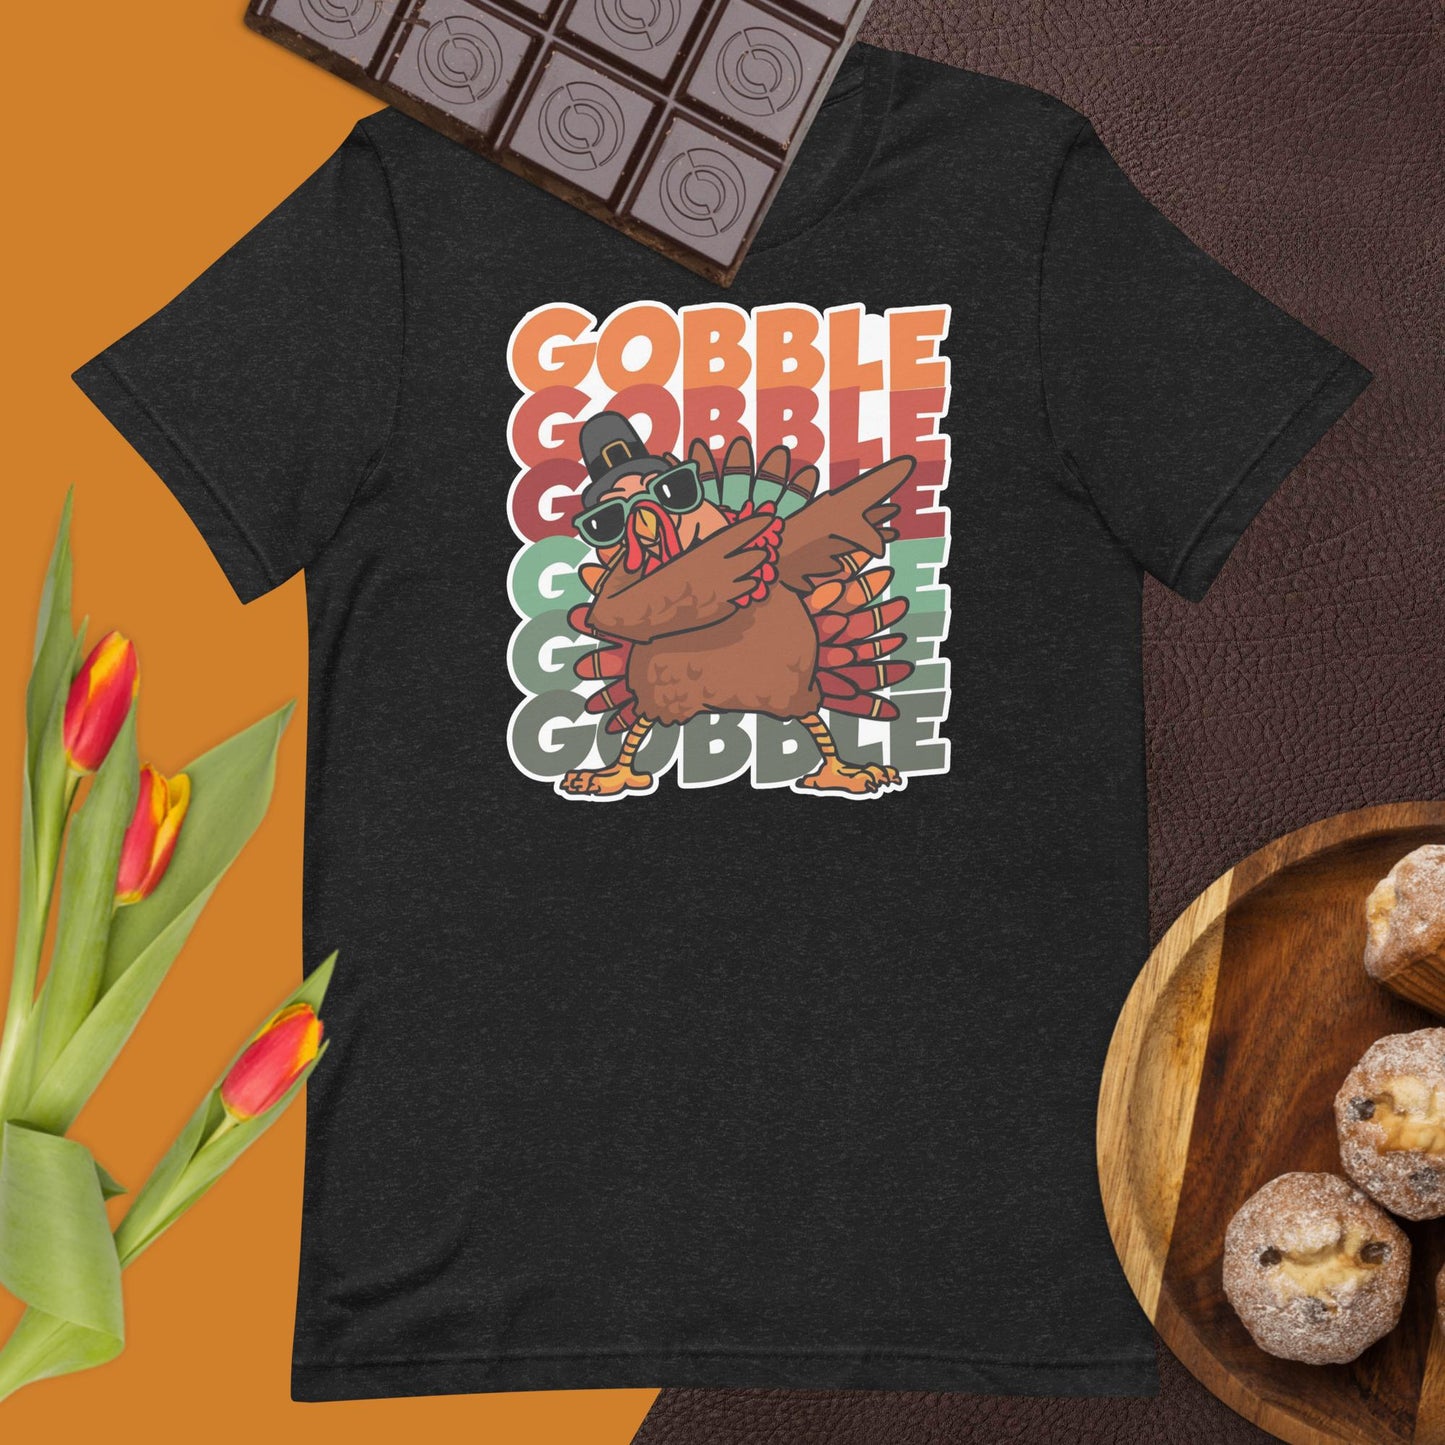 Gobble Gobble Unisex t-shirt